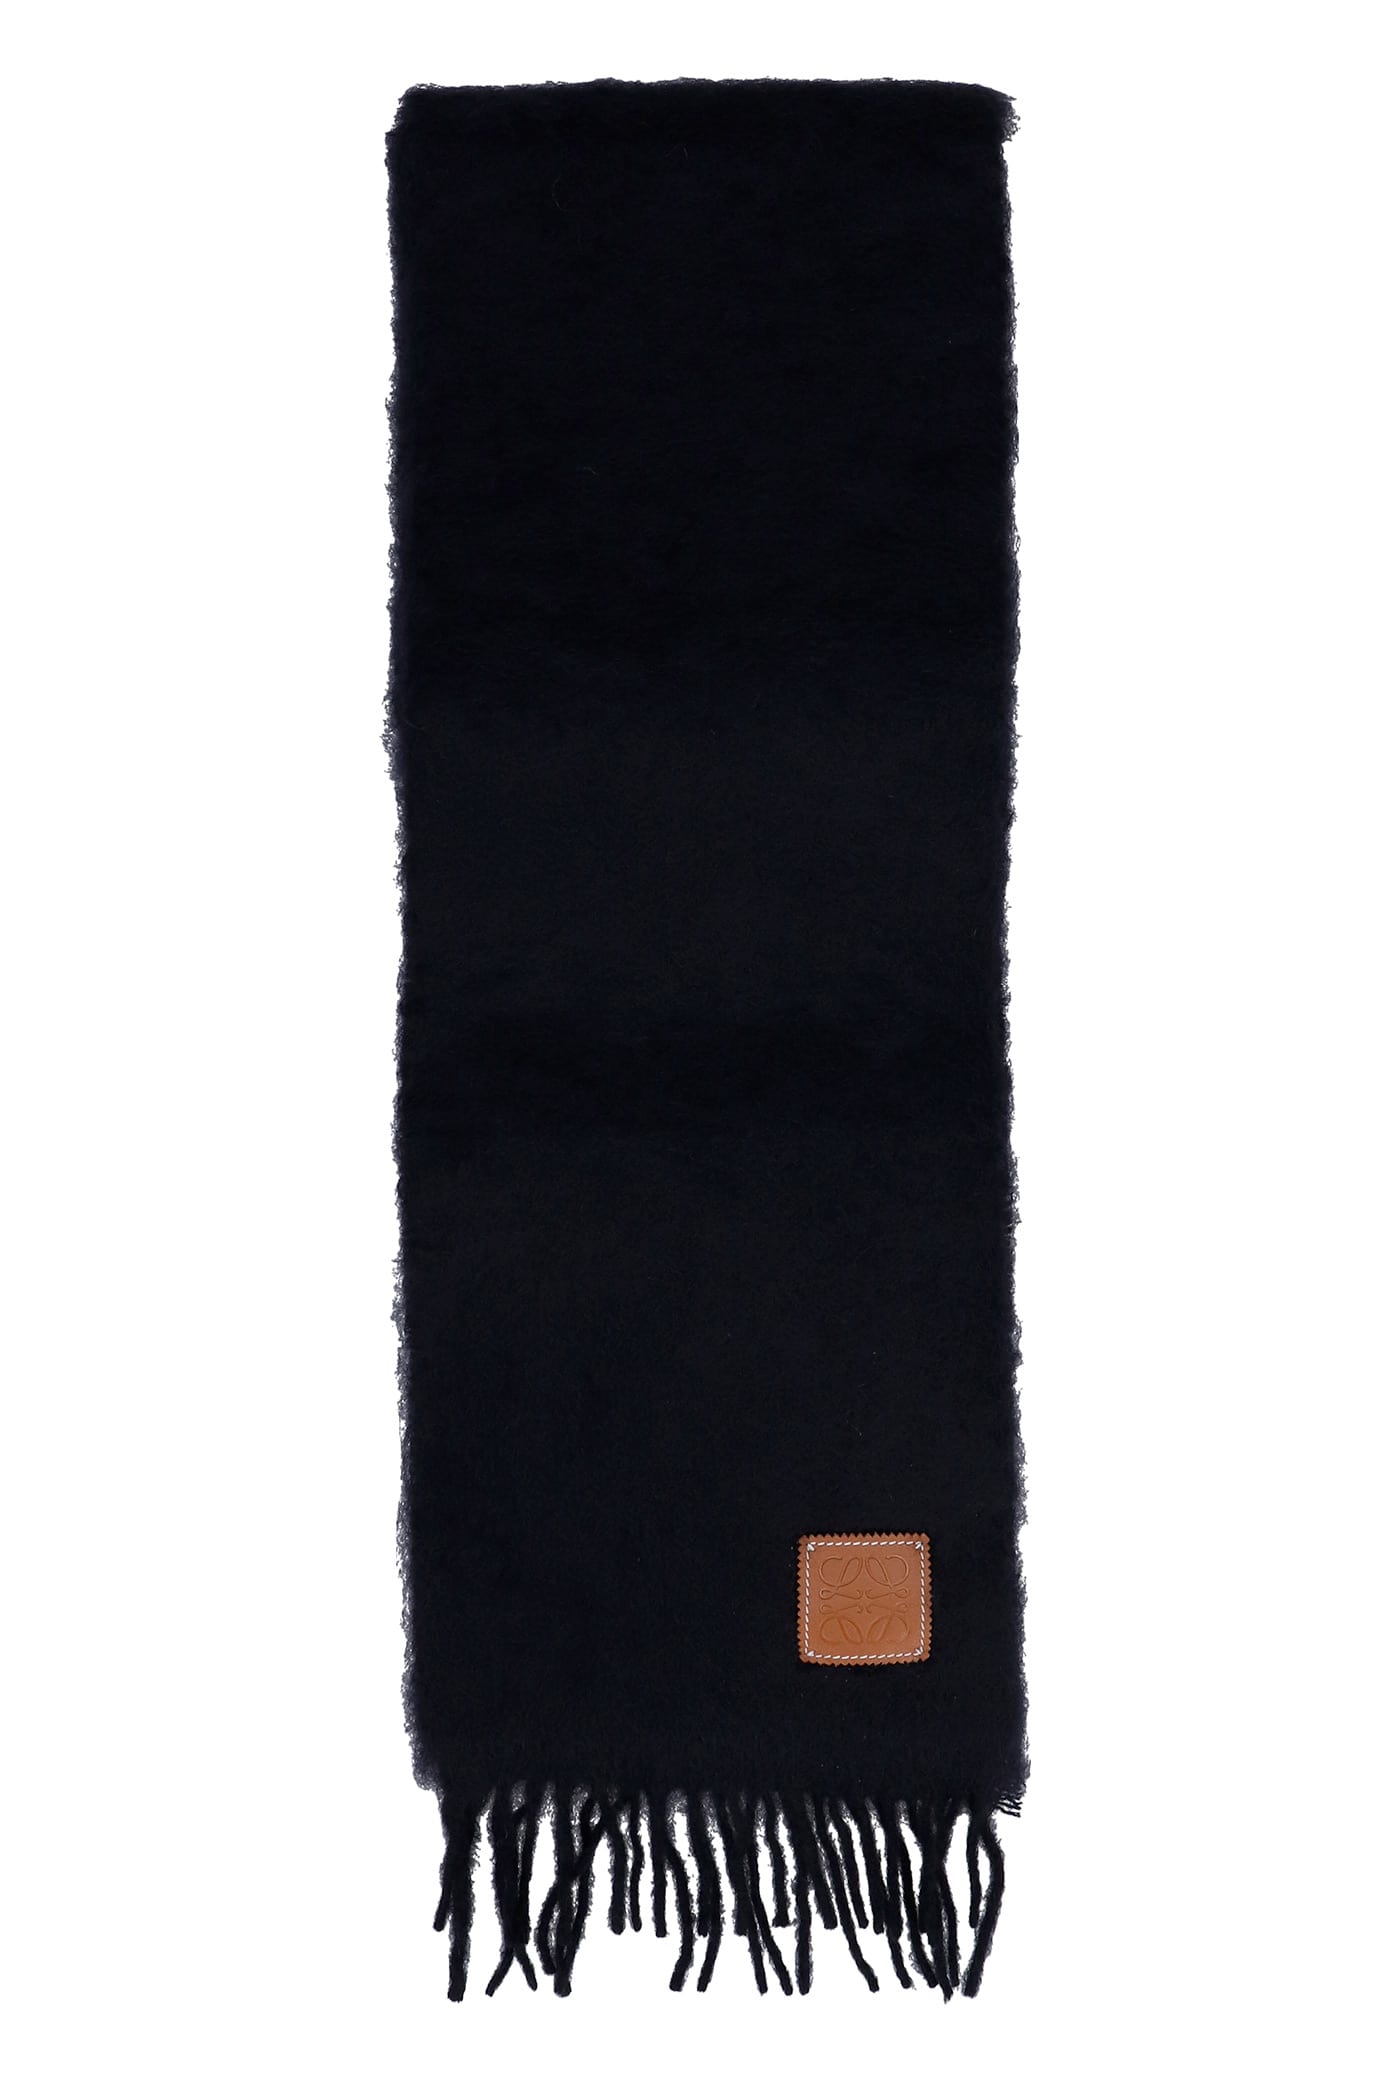 Loewe Scarve In Black Wool